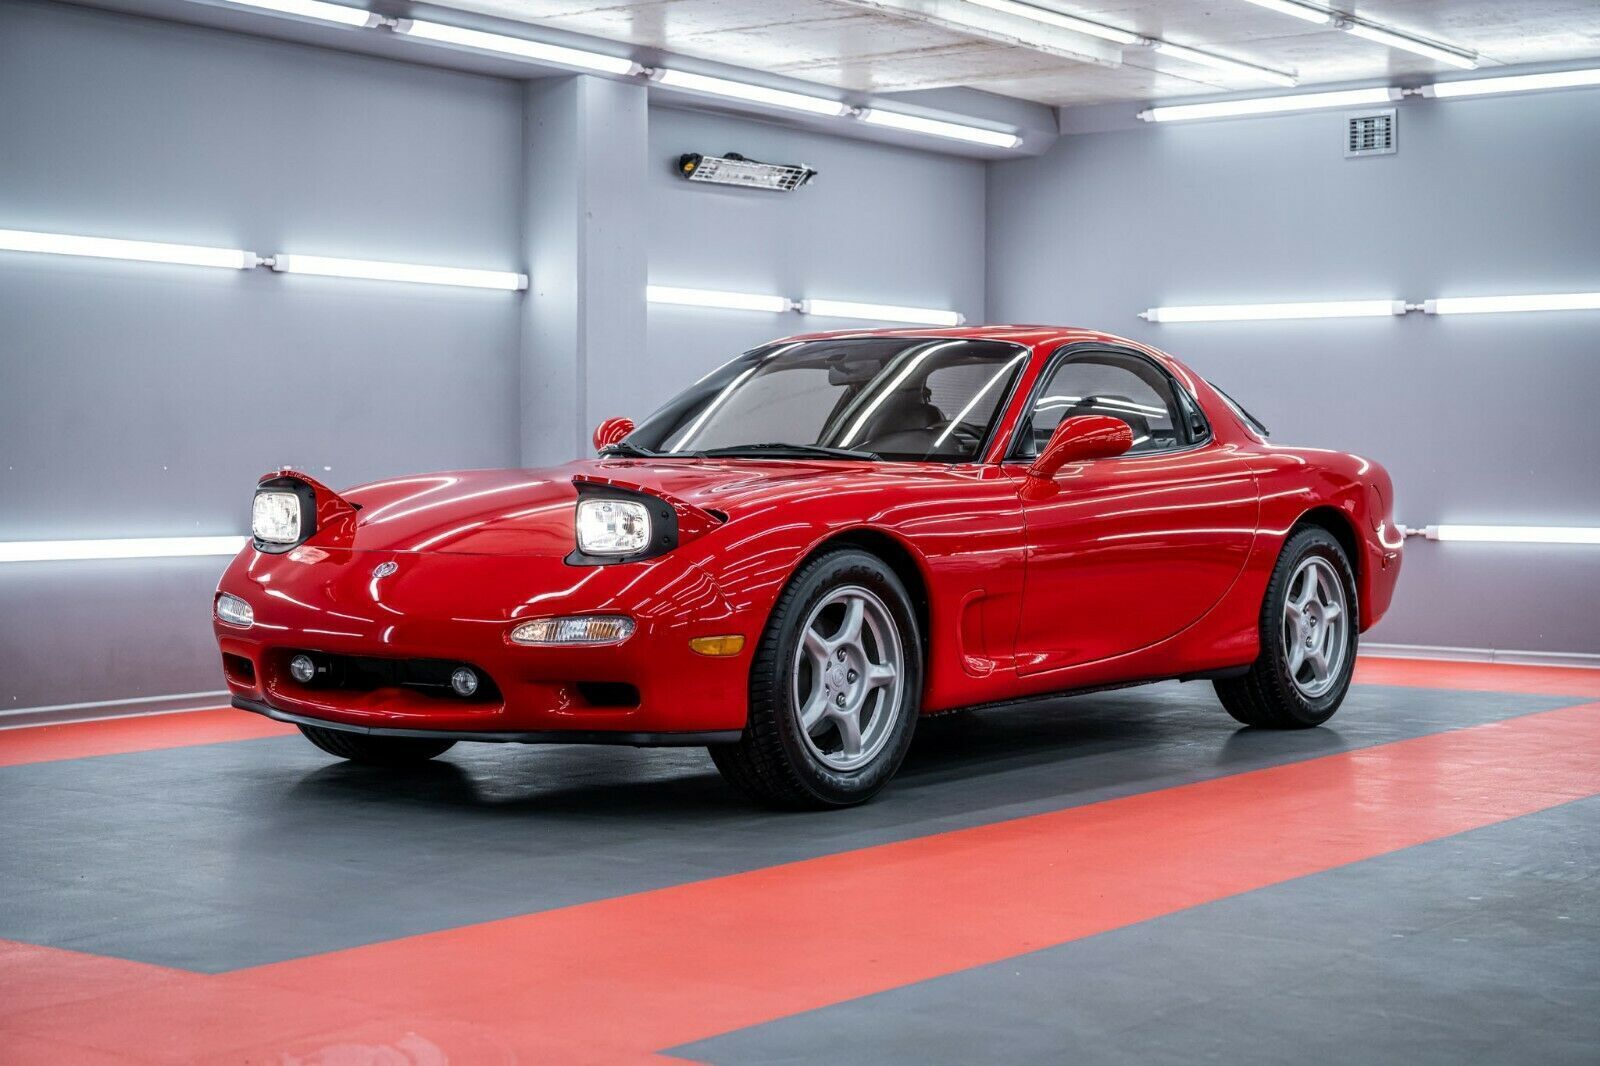 Роторный спорткар Mazda RX-7 был изготовлен 30 лет назад, но до сих пор находится в идеальном состоянии